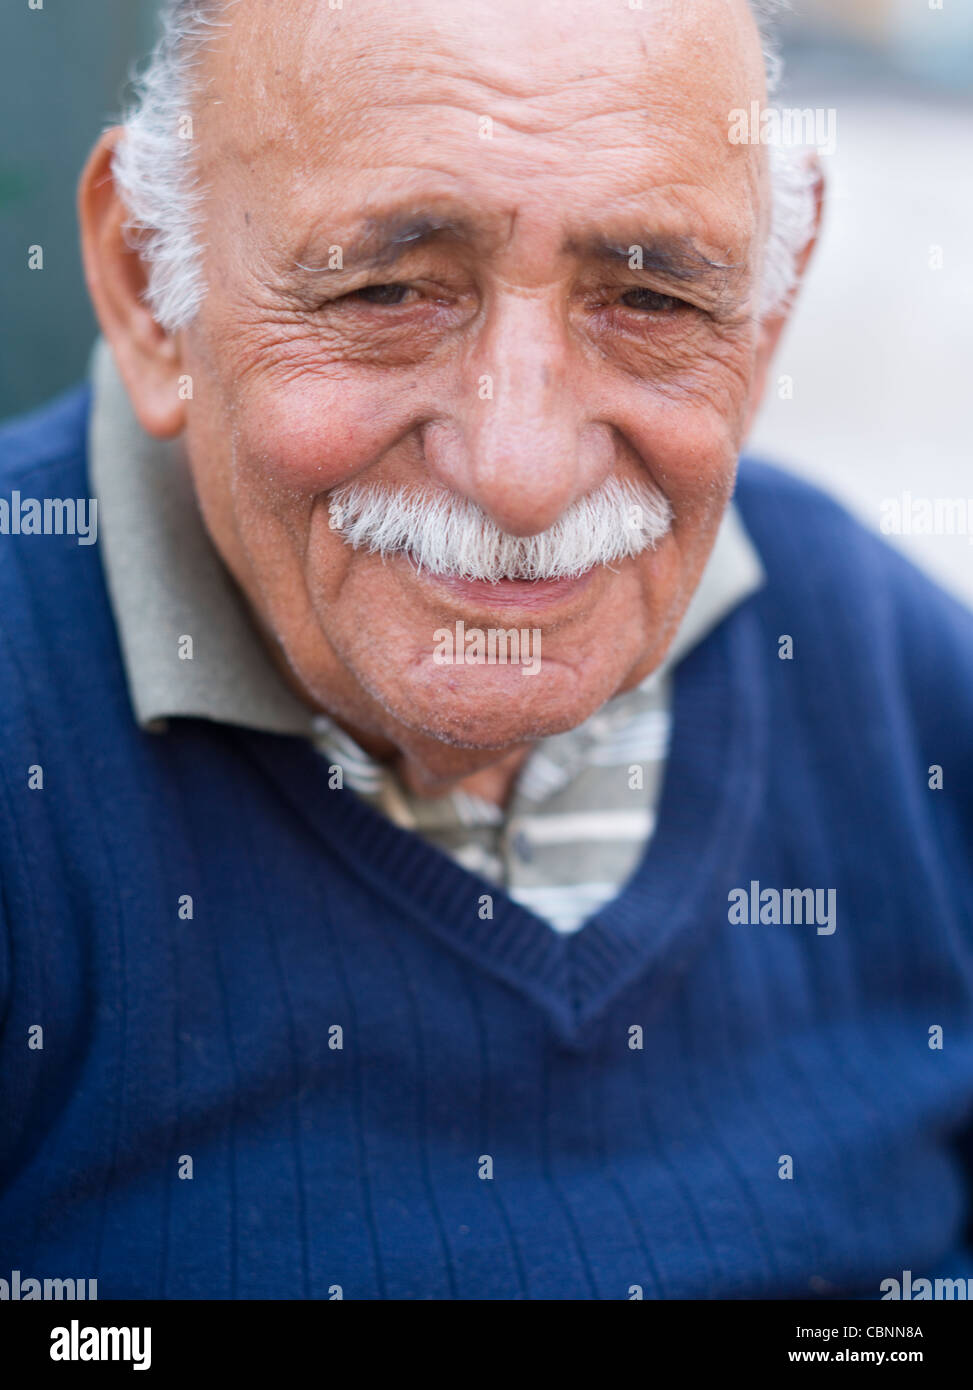 Personnes âgées homme turc avec moustache Banque D'Images